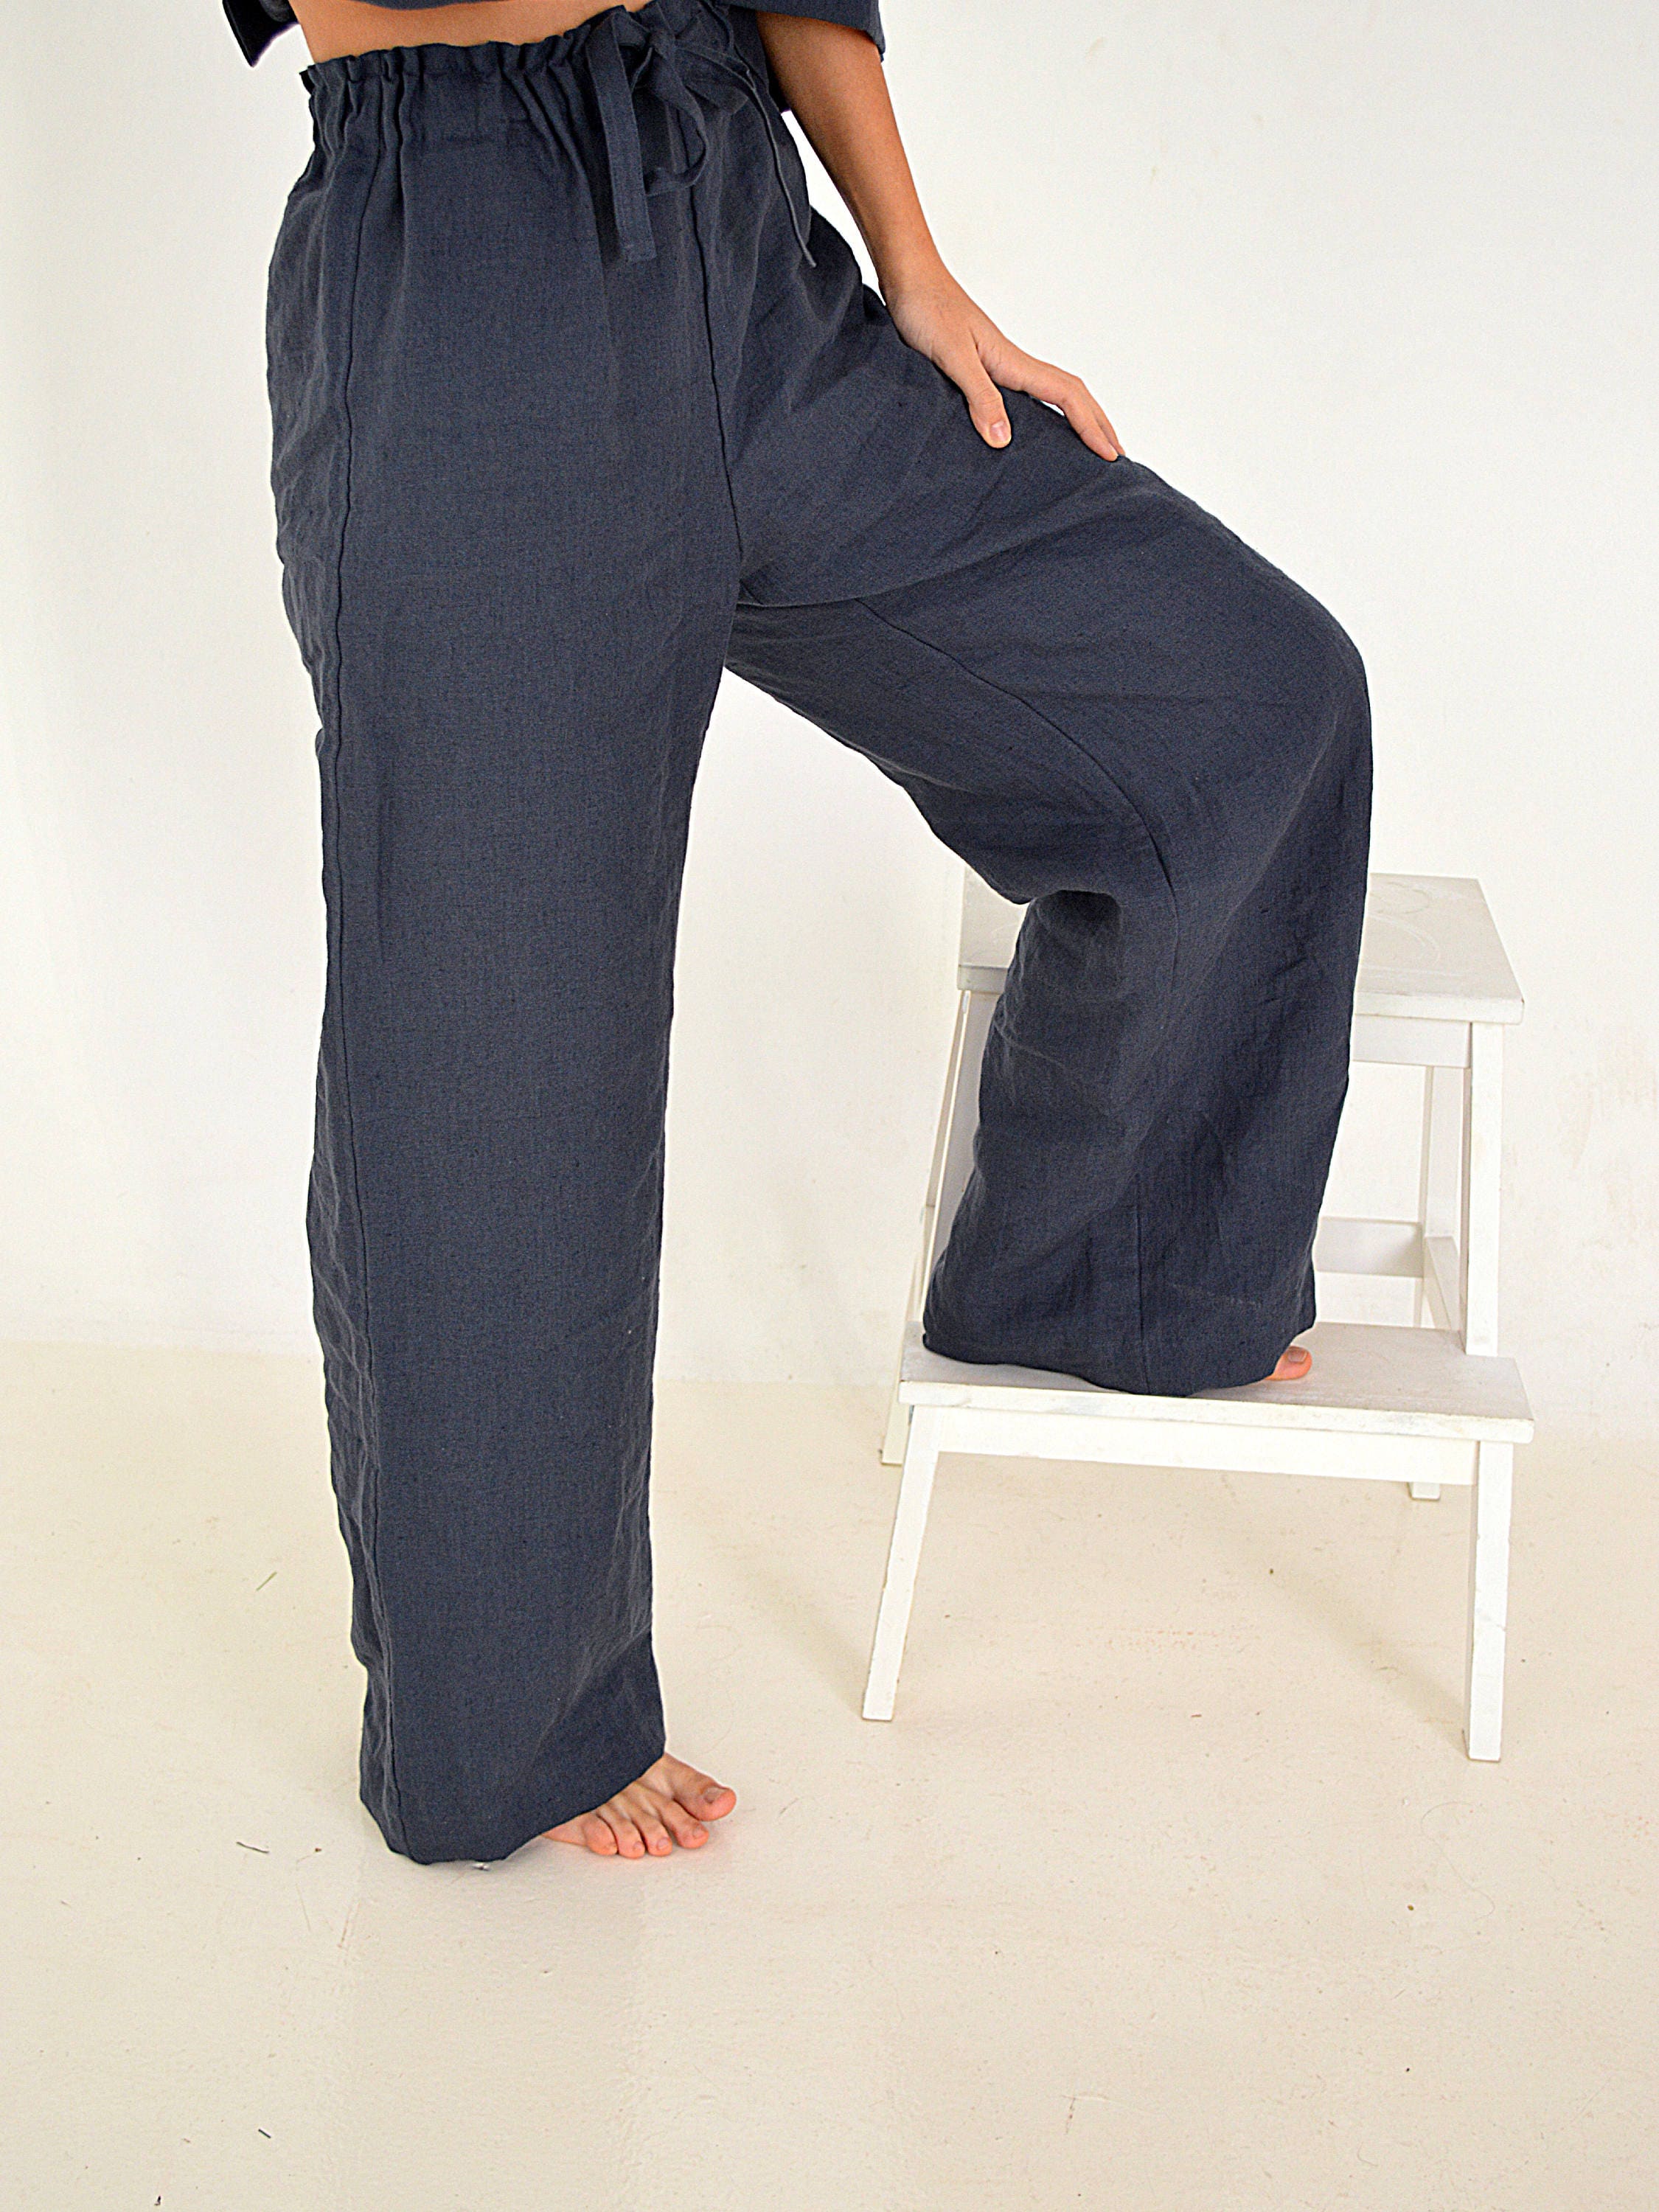 Linen pants / Women's Linen pants / Linen trousers / Sizes | Etsy